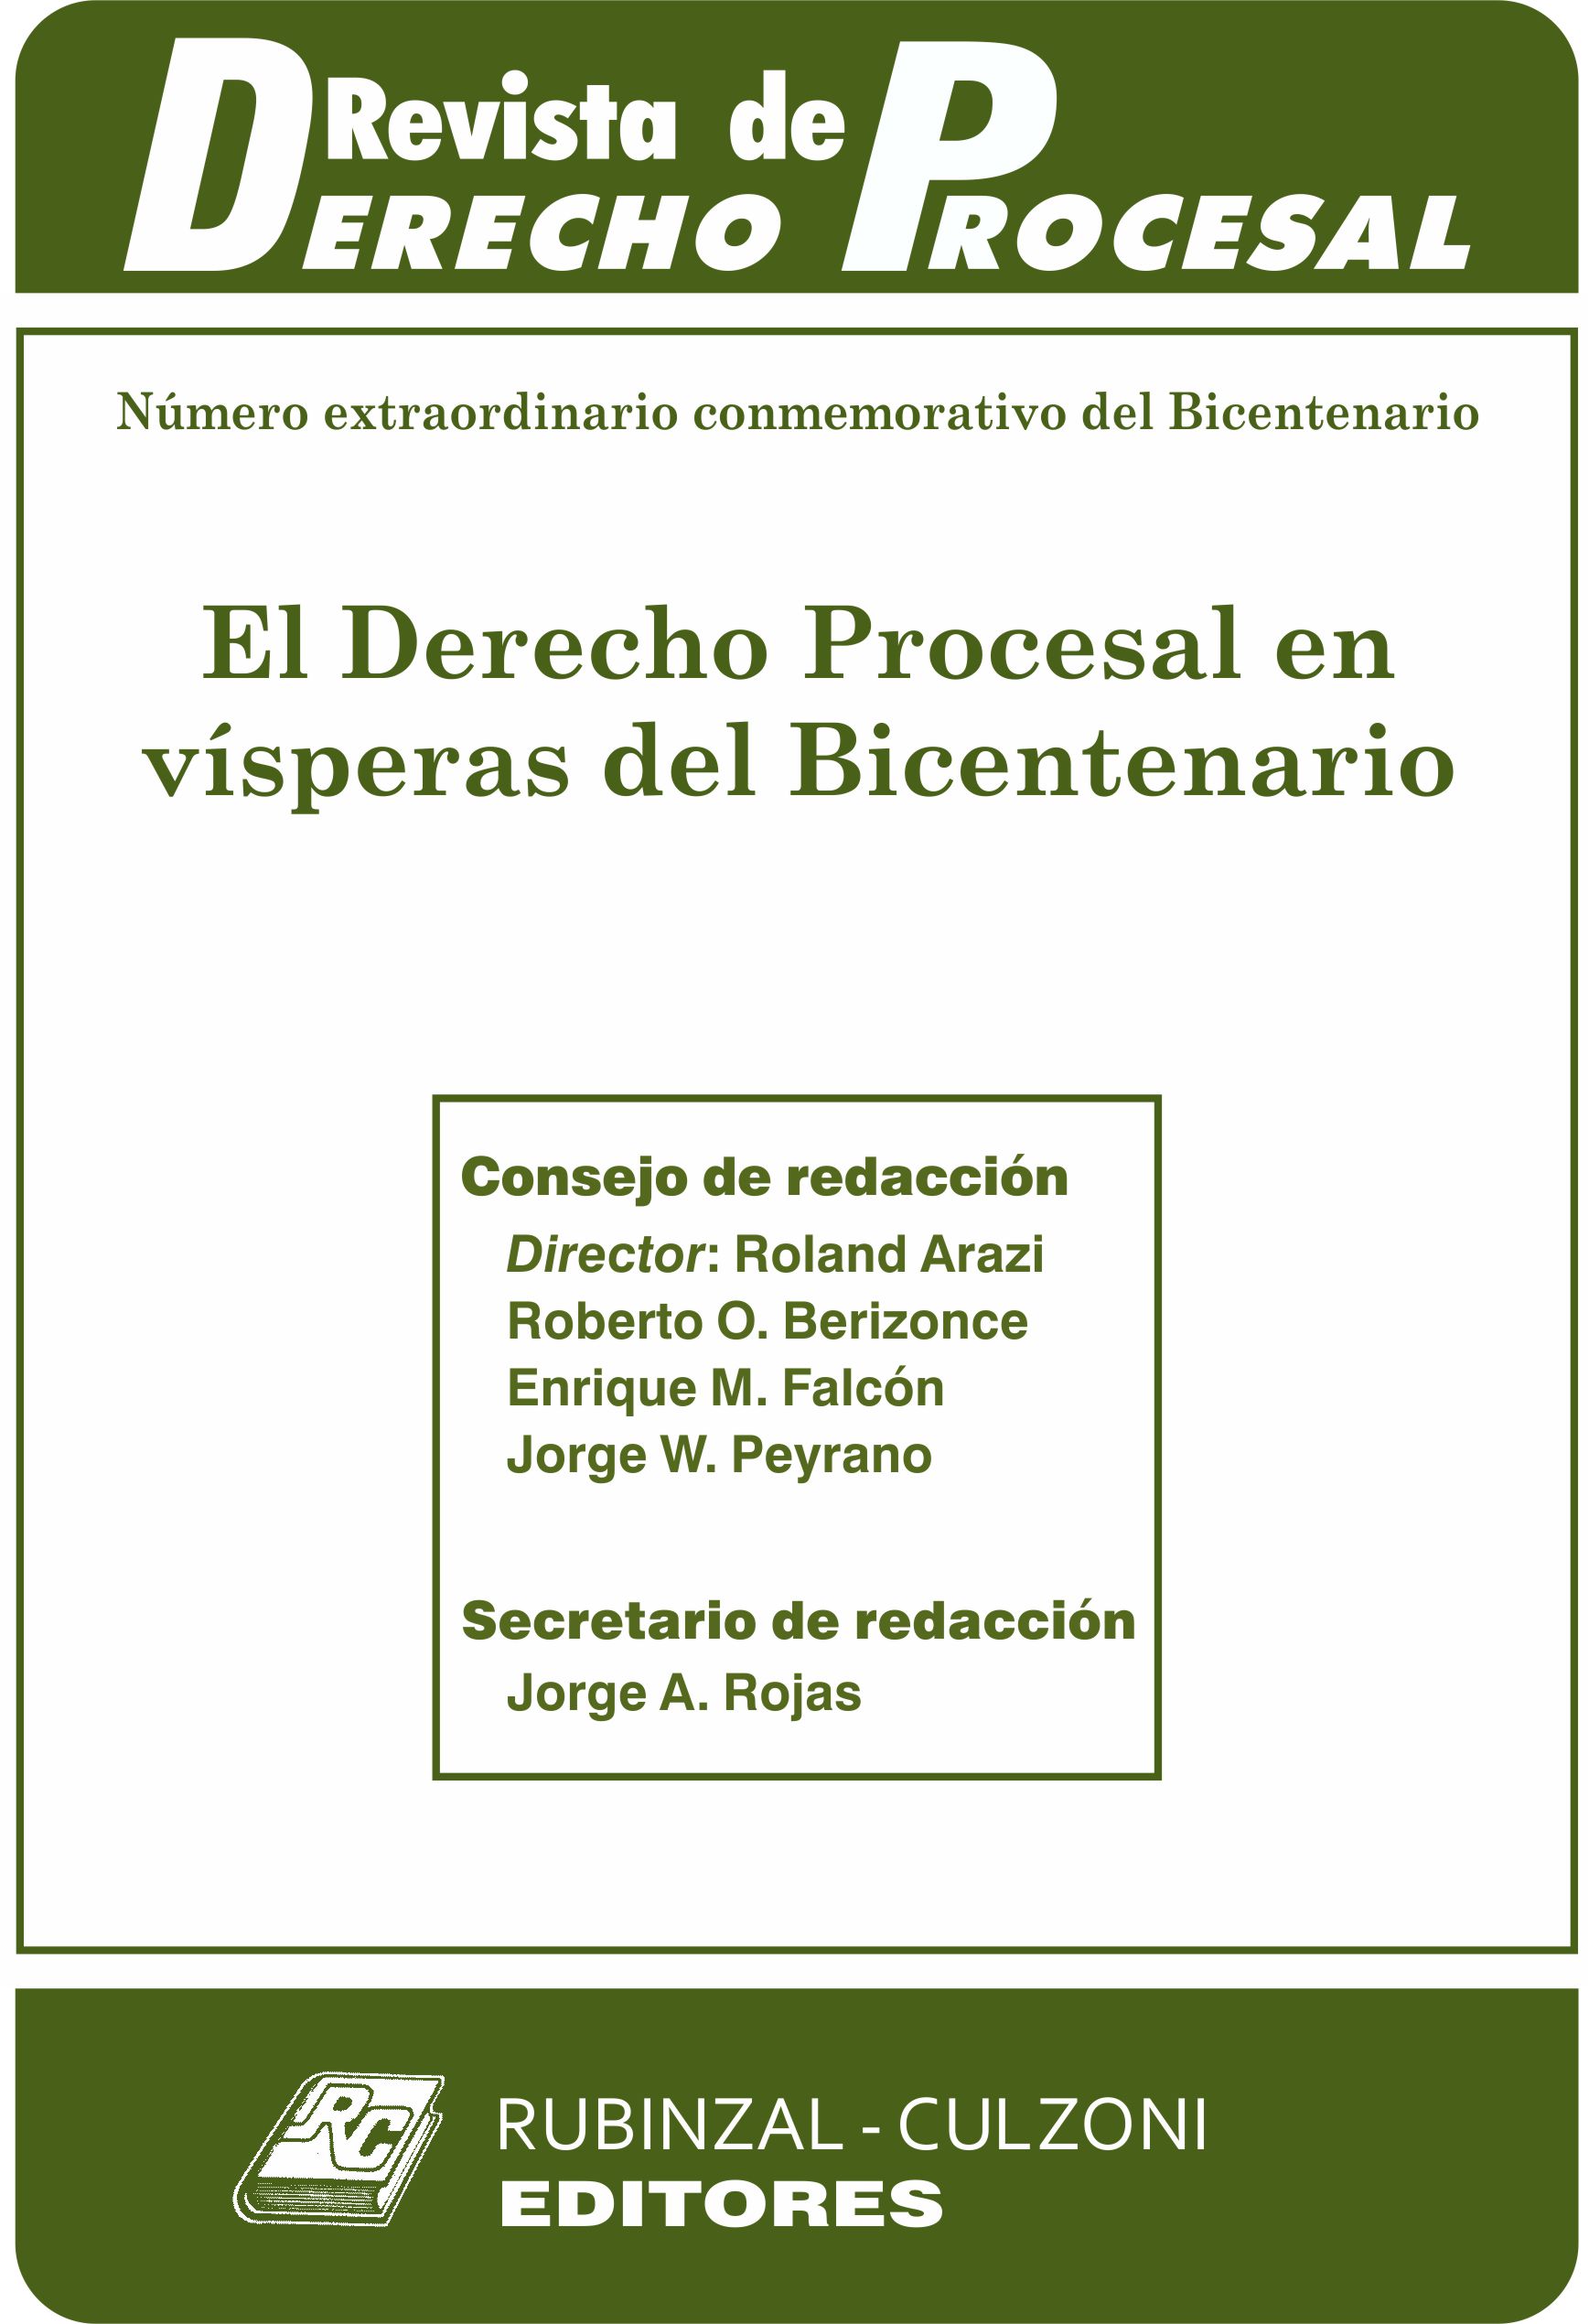 Revista de Derecho Procesal - Número extraordinario conmemorativo del Bicentenario. El Derecho Procesal en vísperas del Bicentenario.